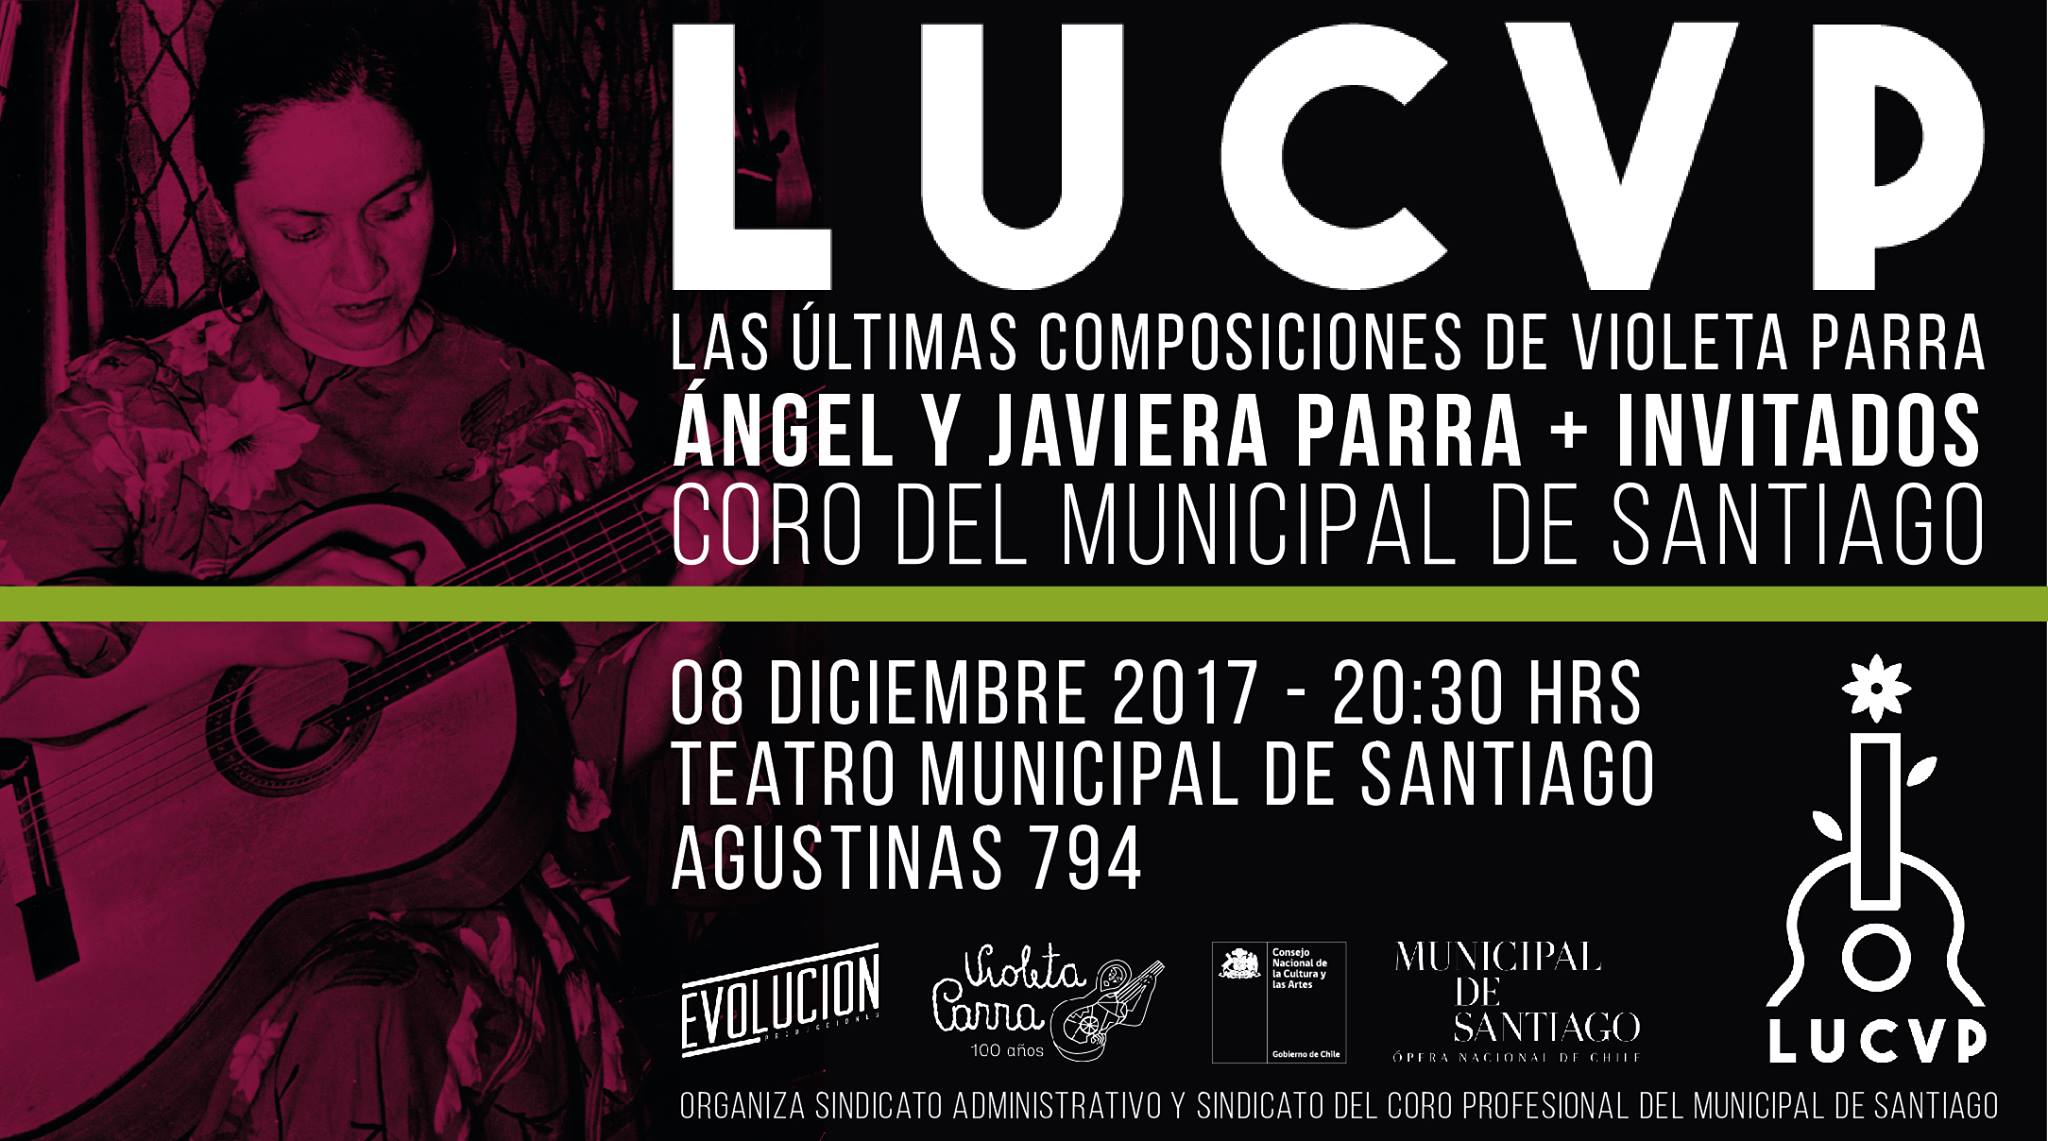 Ya comenzó la venta de entradas para el concierto de “Las Últimas Composiciones de Violeta Parra” (LUCVP) en el Teatro Municipal de Santiago.